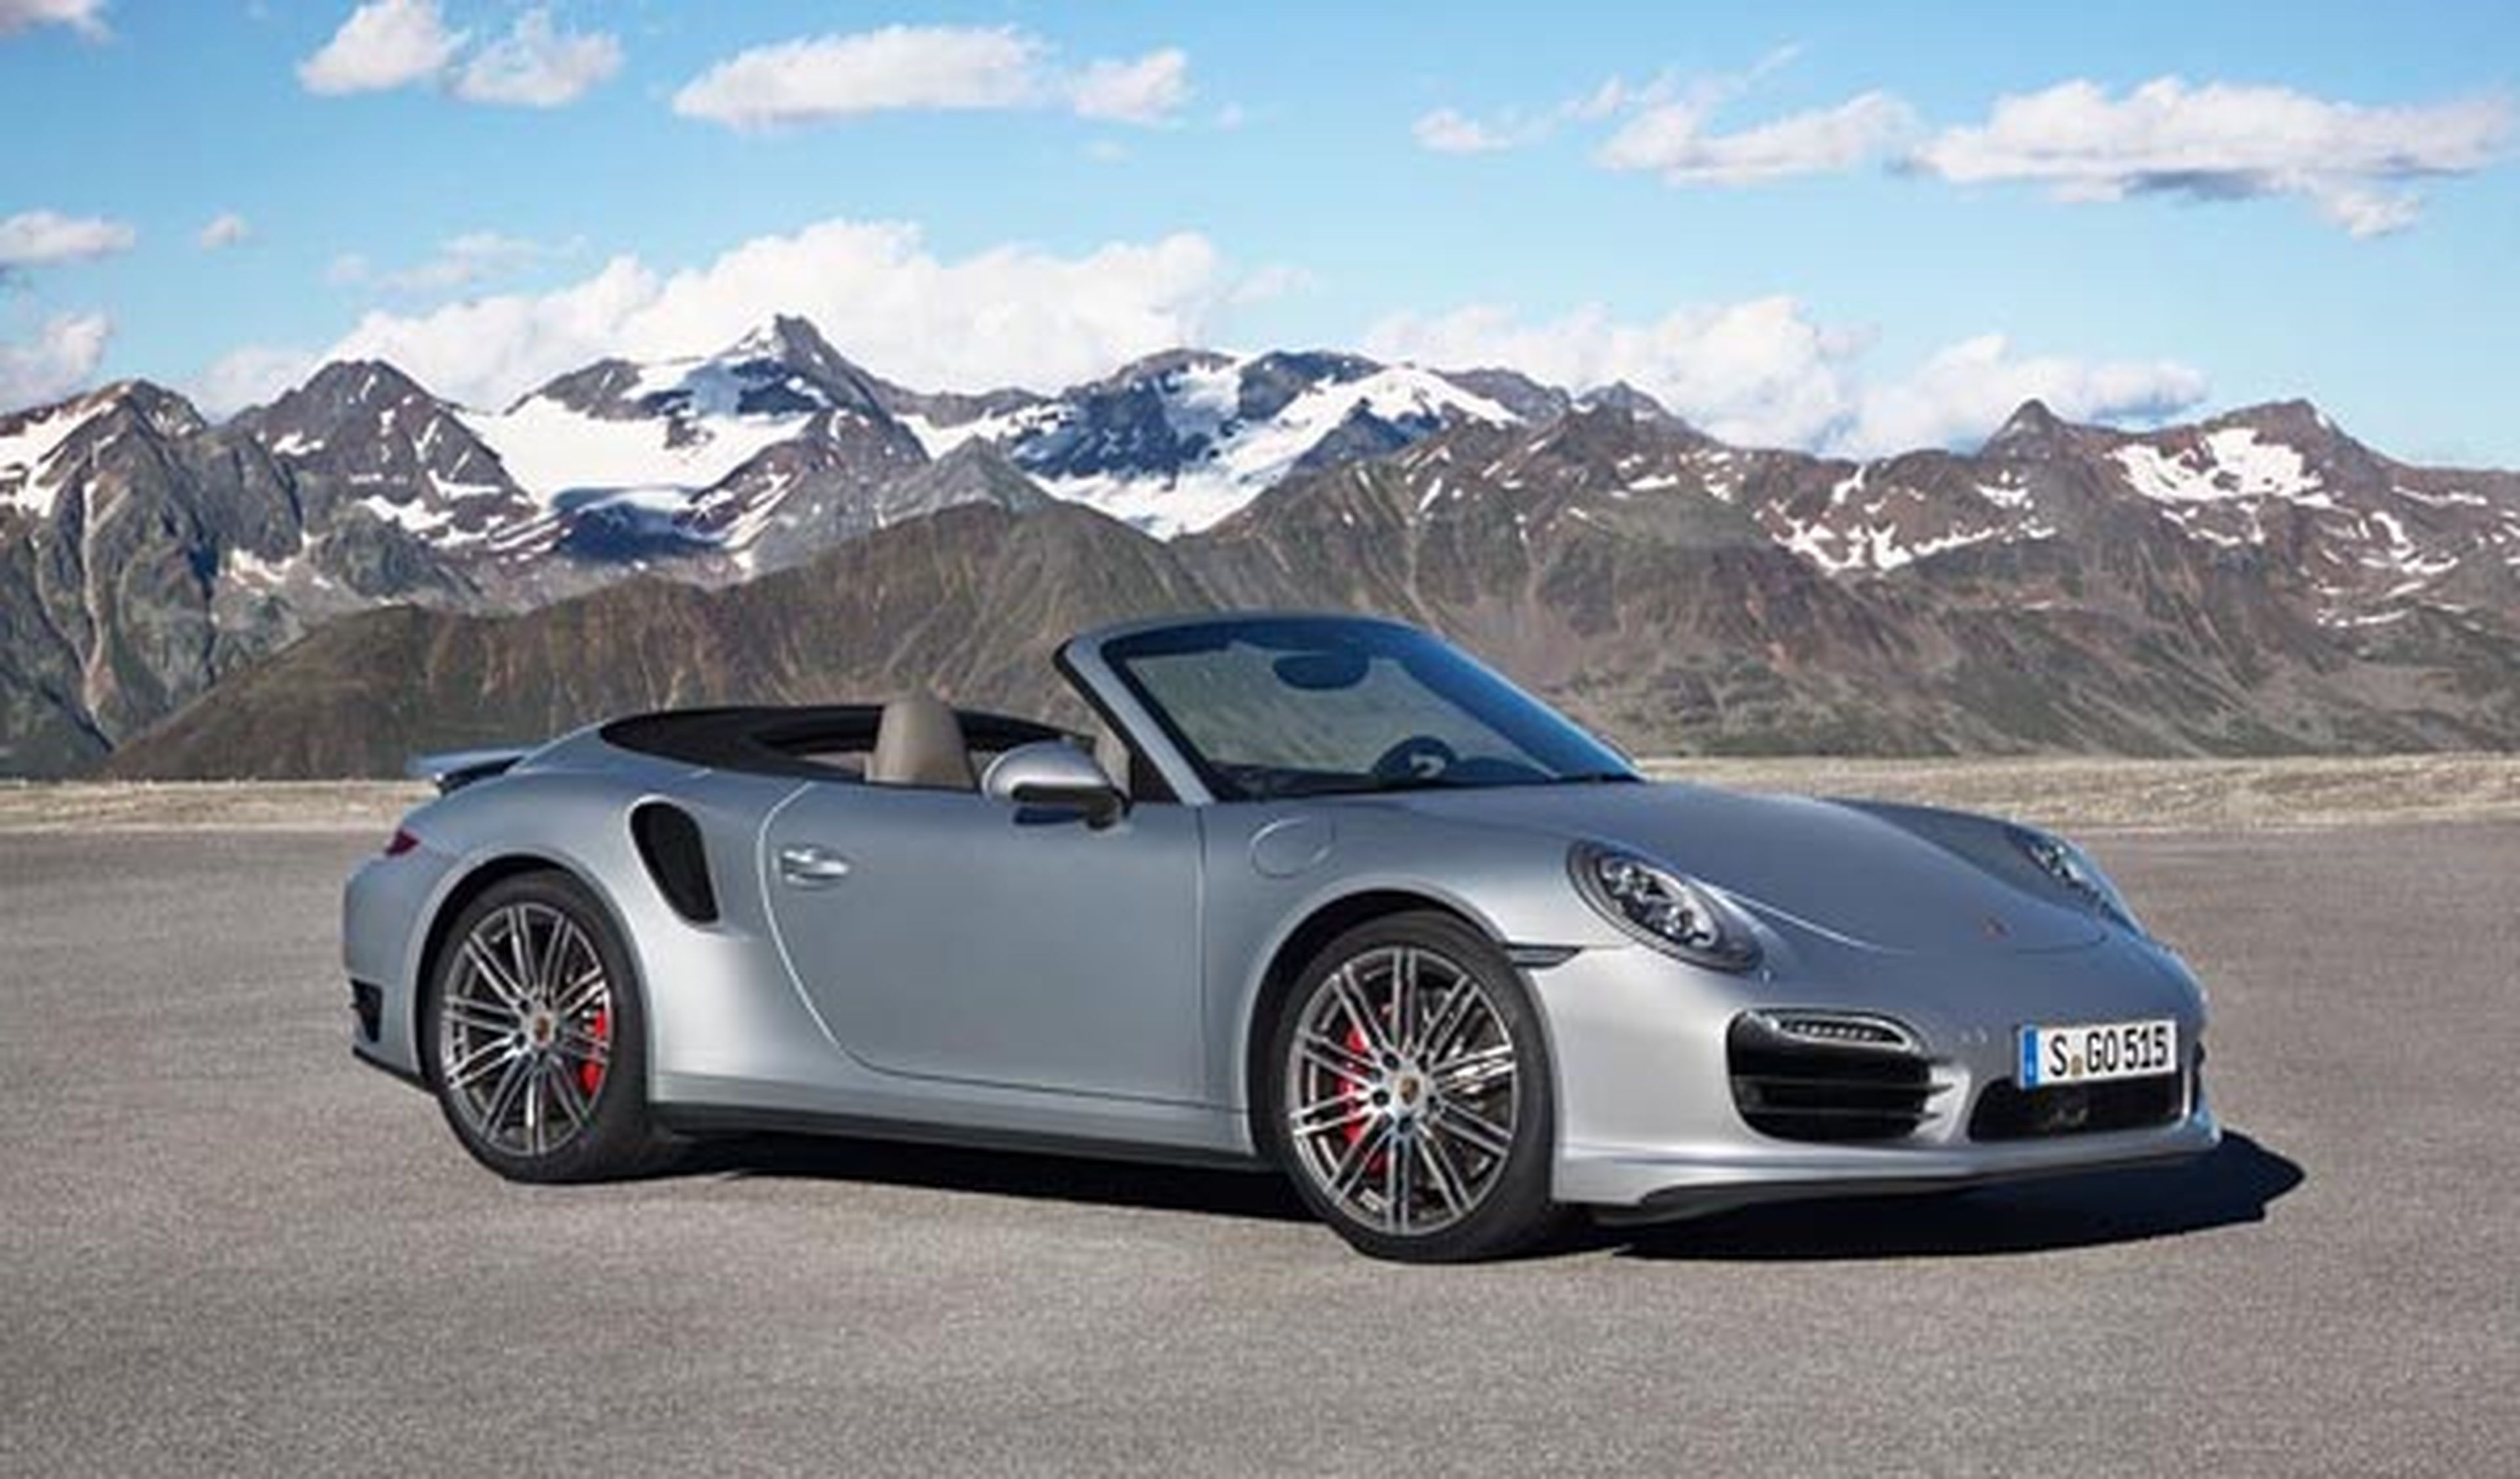 Porsche presenta novedades mundiales en EEUU, Japón y China